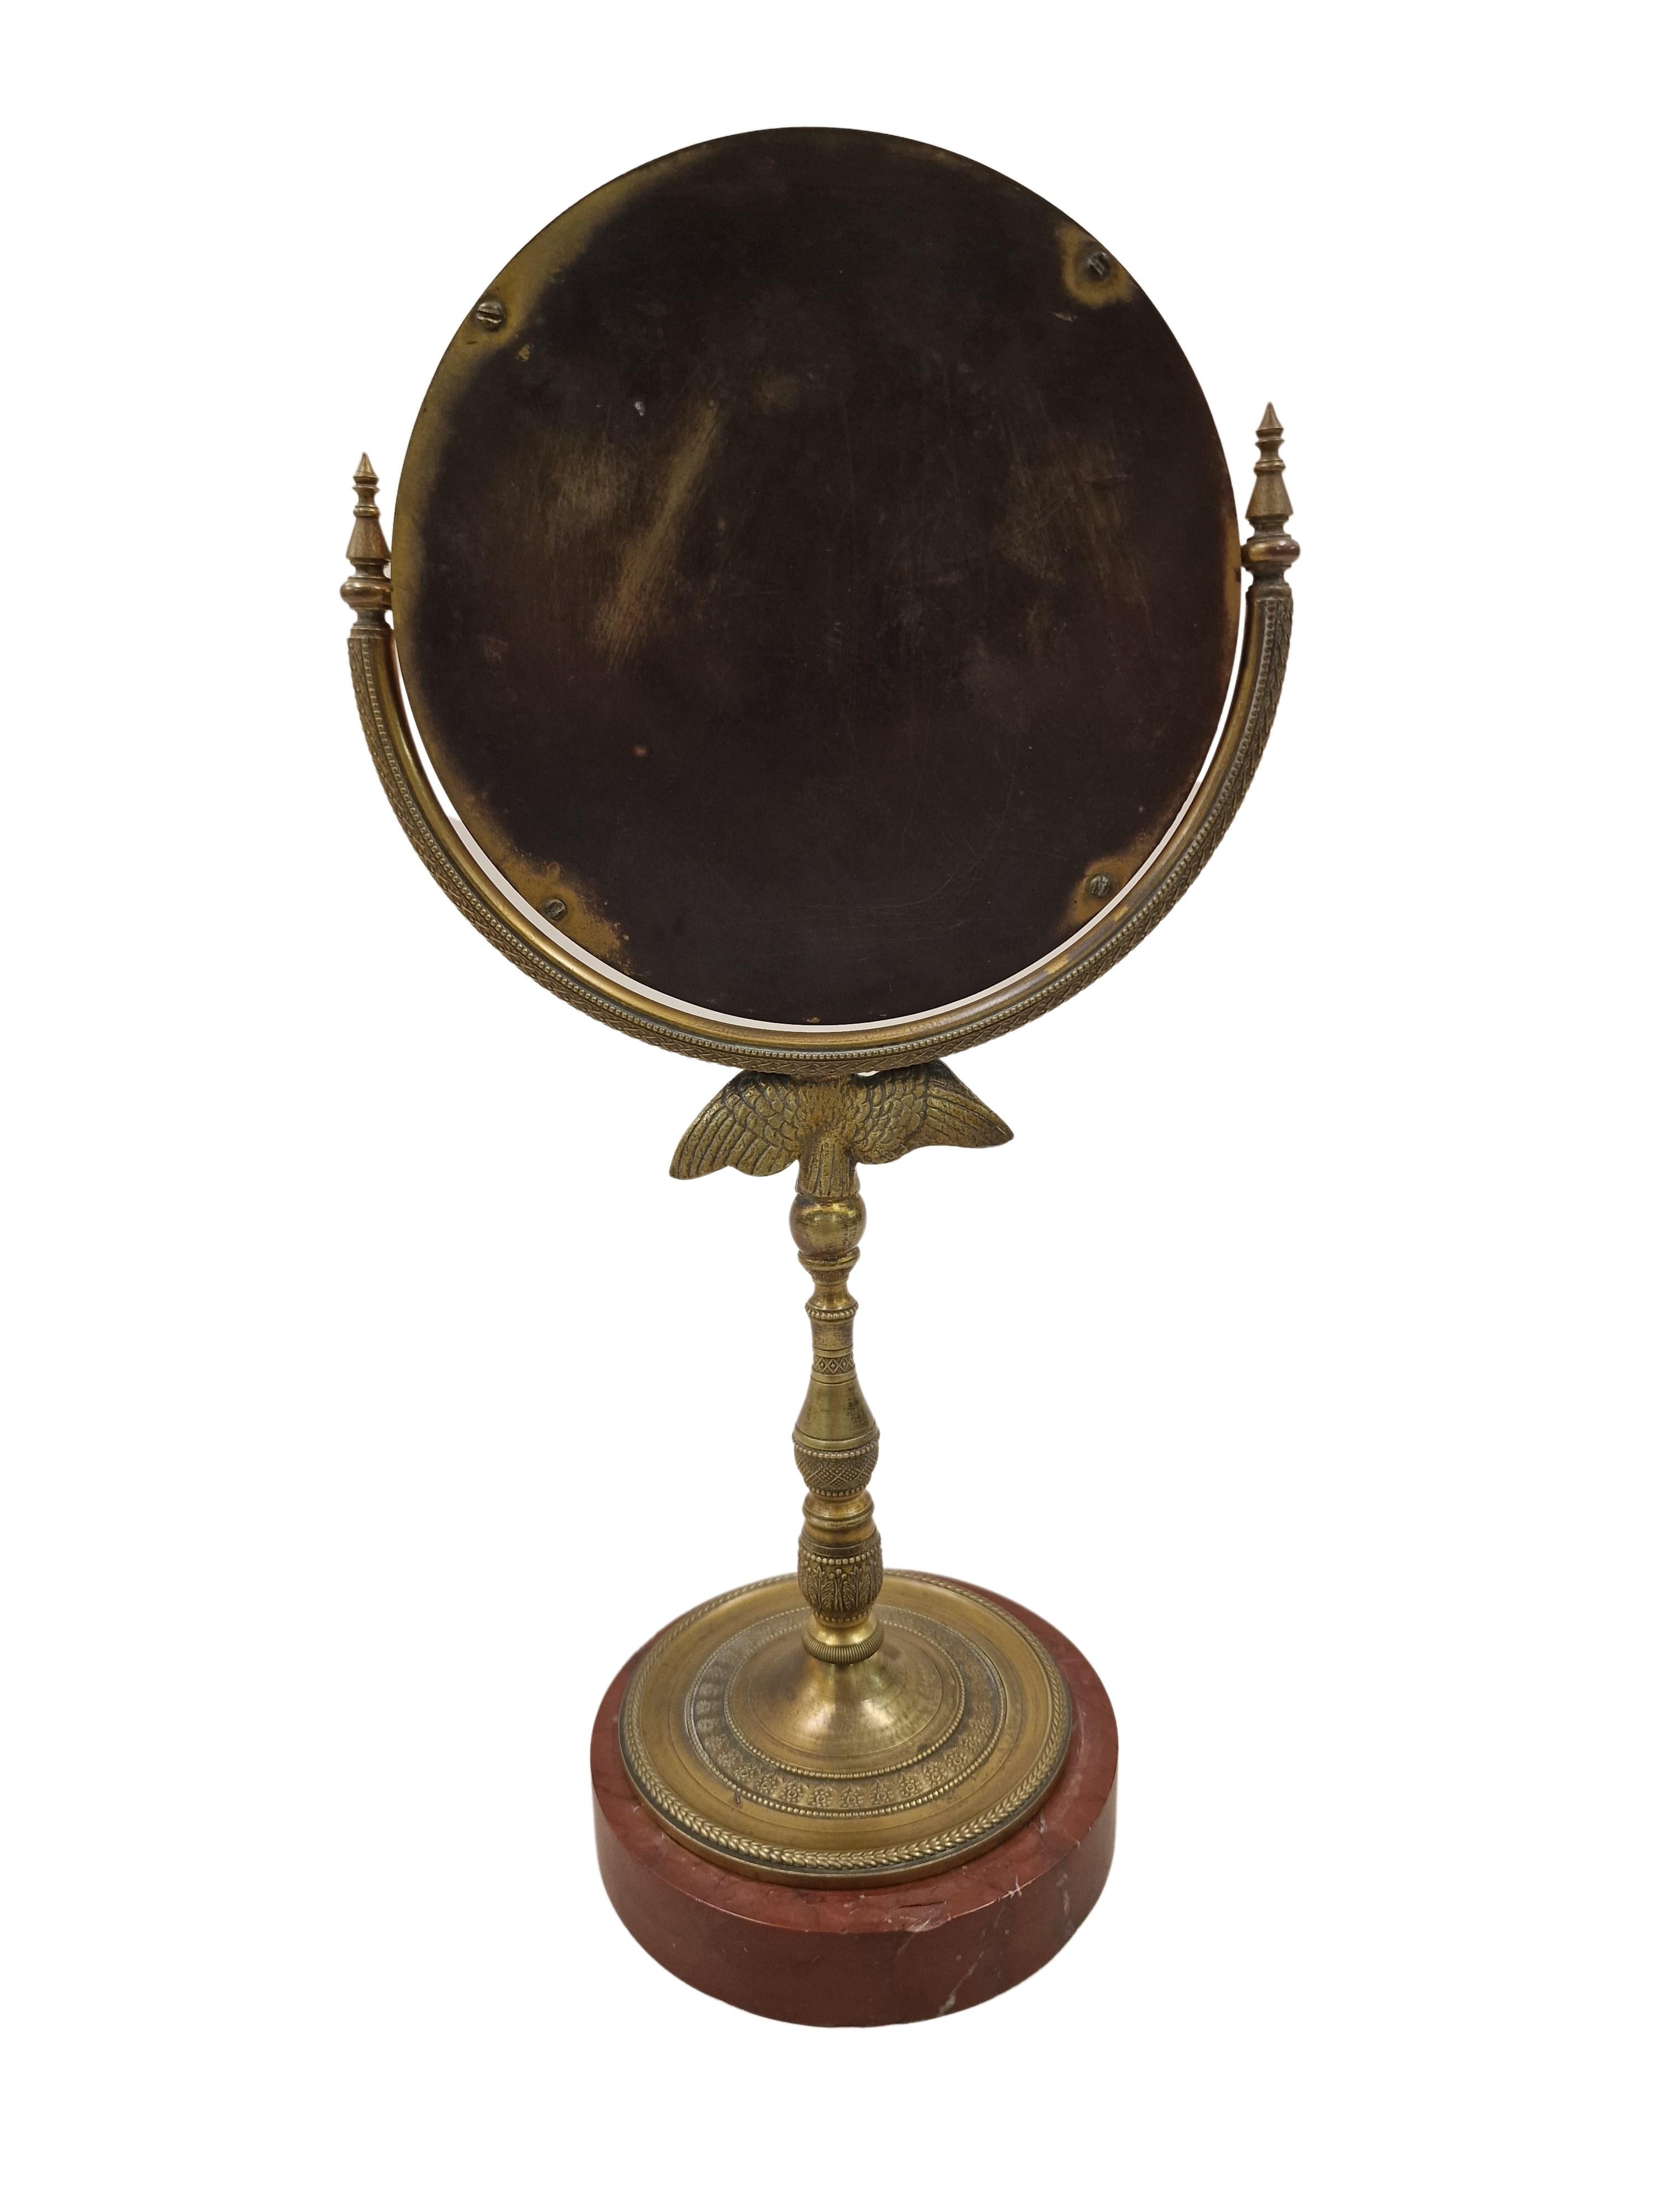 Charmant miroir de table, un travail de grande qualité, réalisé vers les années 1820 en France. 

Le socle est en bronze avec une base en marbre rouge. Le support en bronze est très délicatement travaillé, avec de nombreux détails magnifiques,